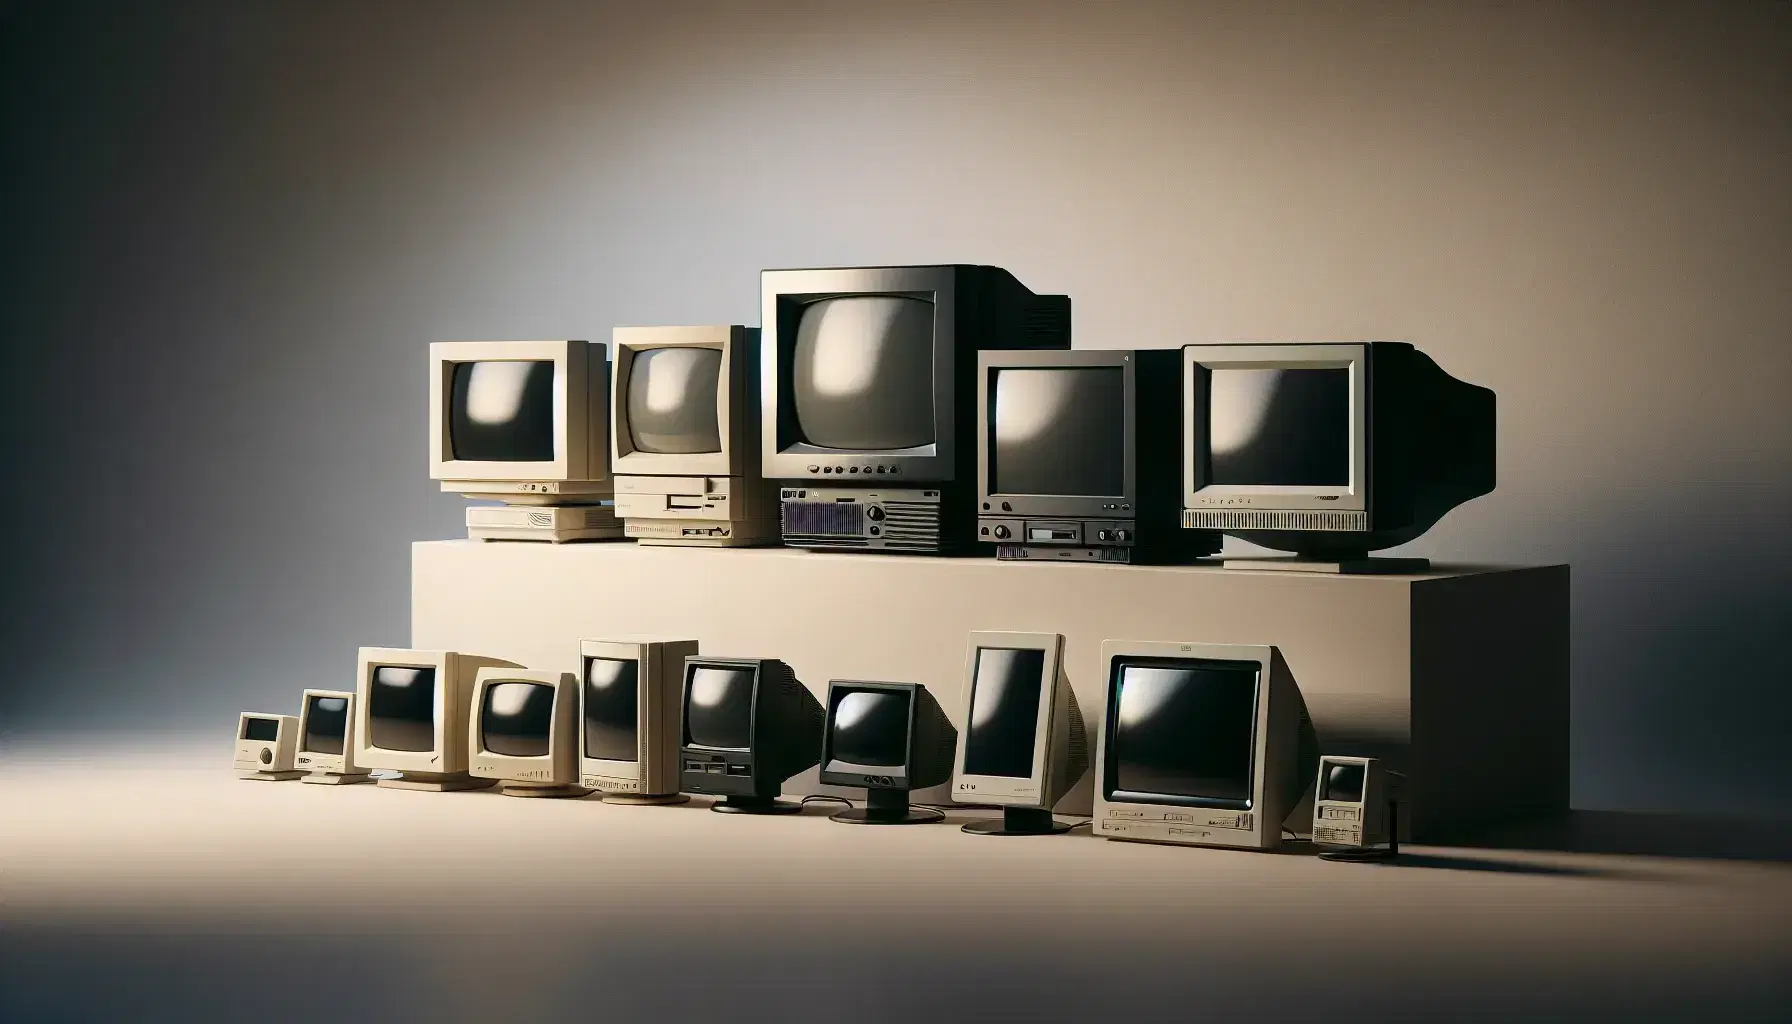 Colección de monitores de computadora mostrando la evolución tecnológica, desde un CRT beige antiguo hasta un LED moderno y delgado.